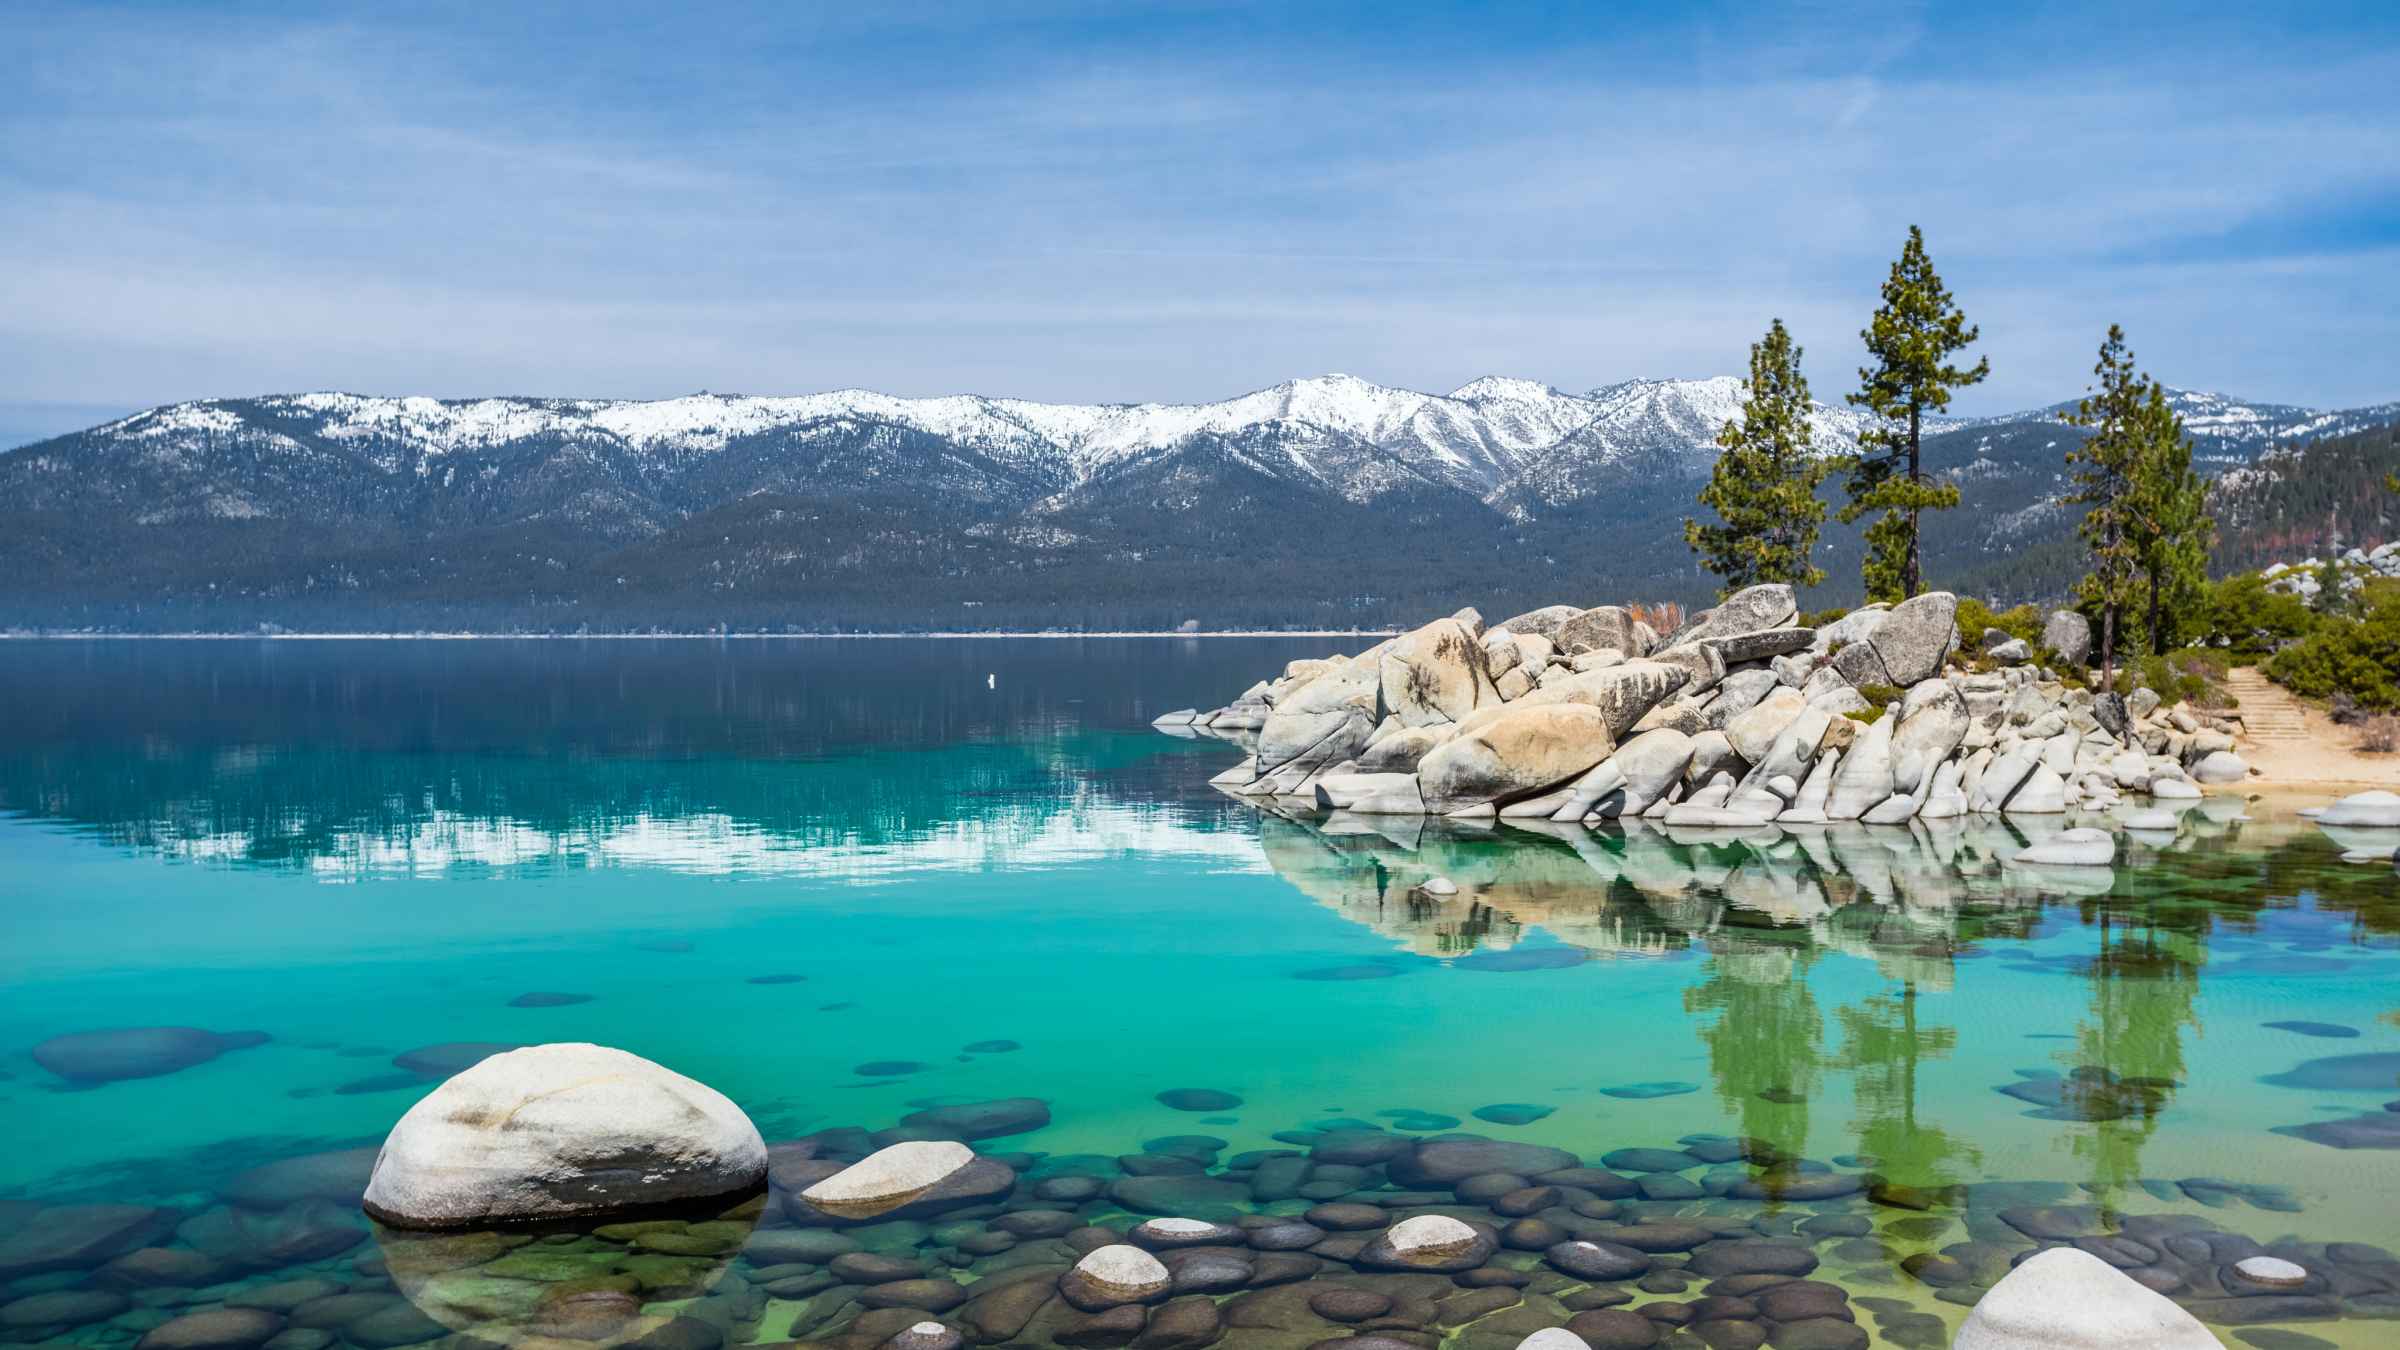 Jezioro Tahoe 10 najlepszych wycieczek jednodniowych 2021 roku